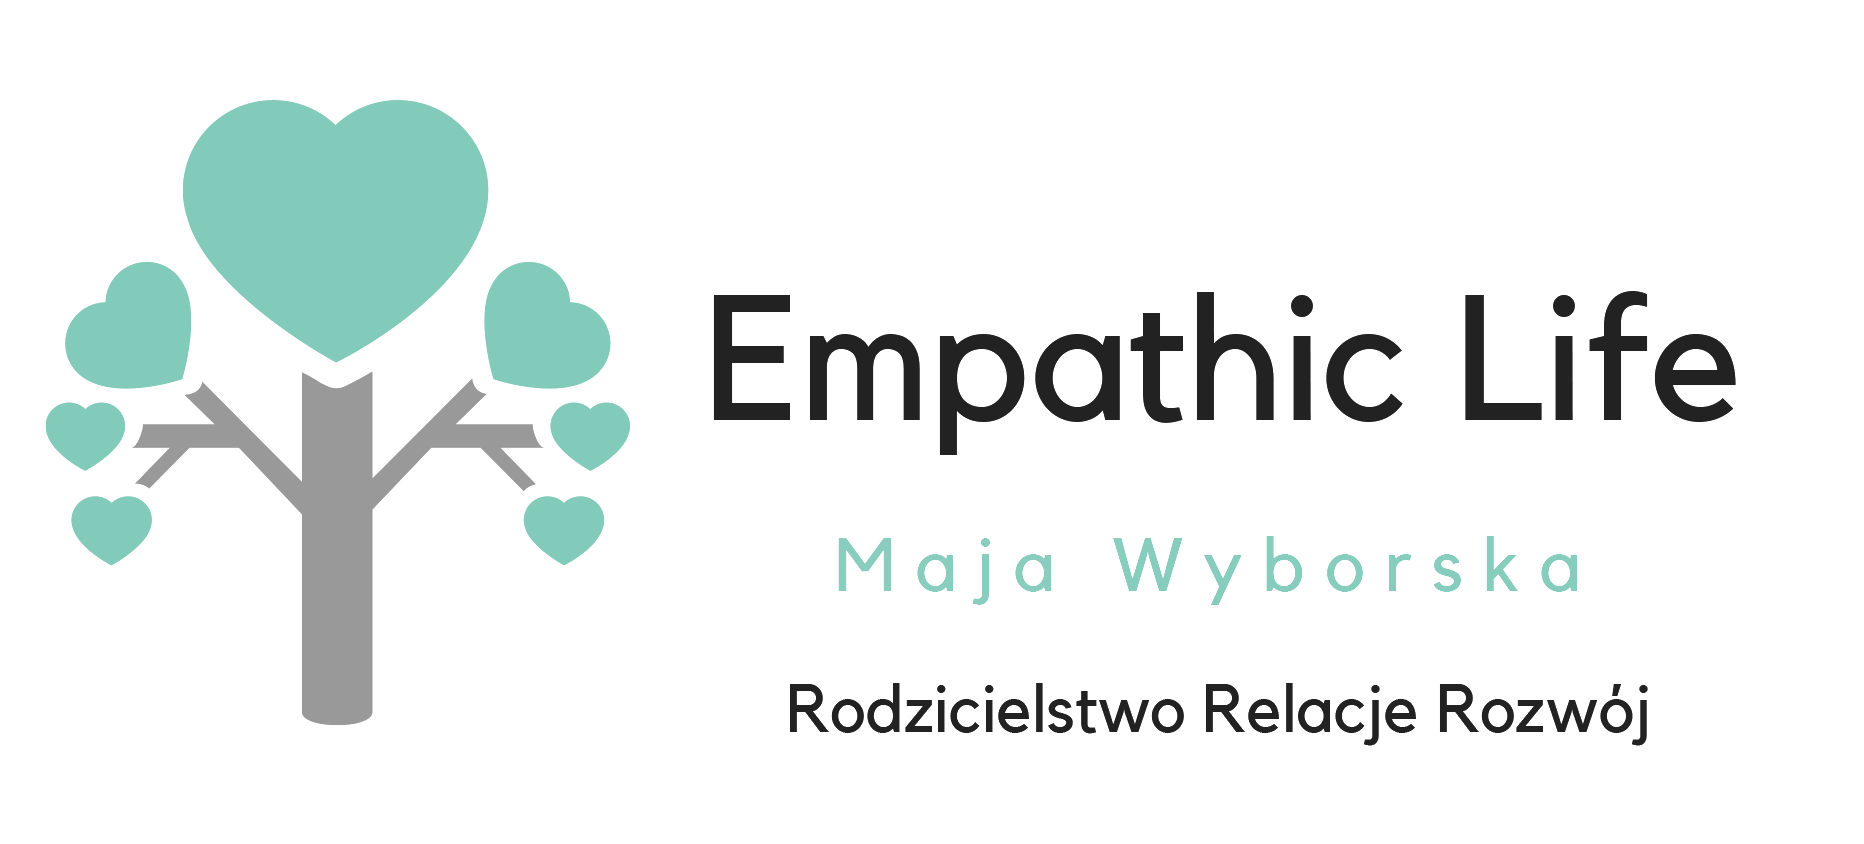 Empathic Life Maja Wyborska